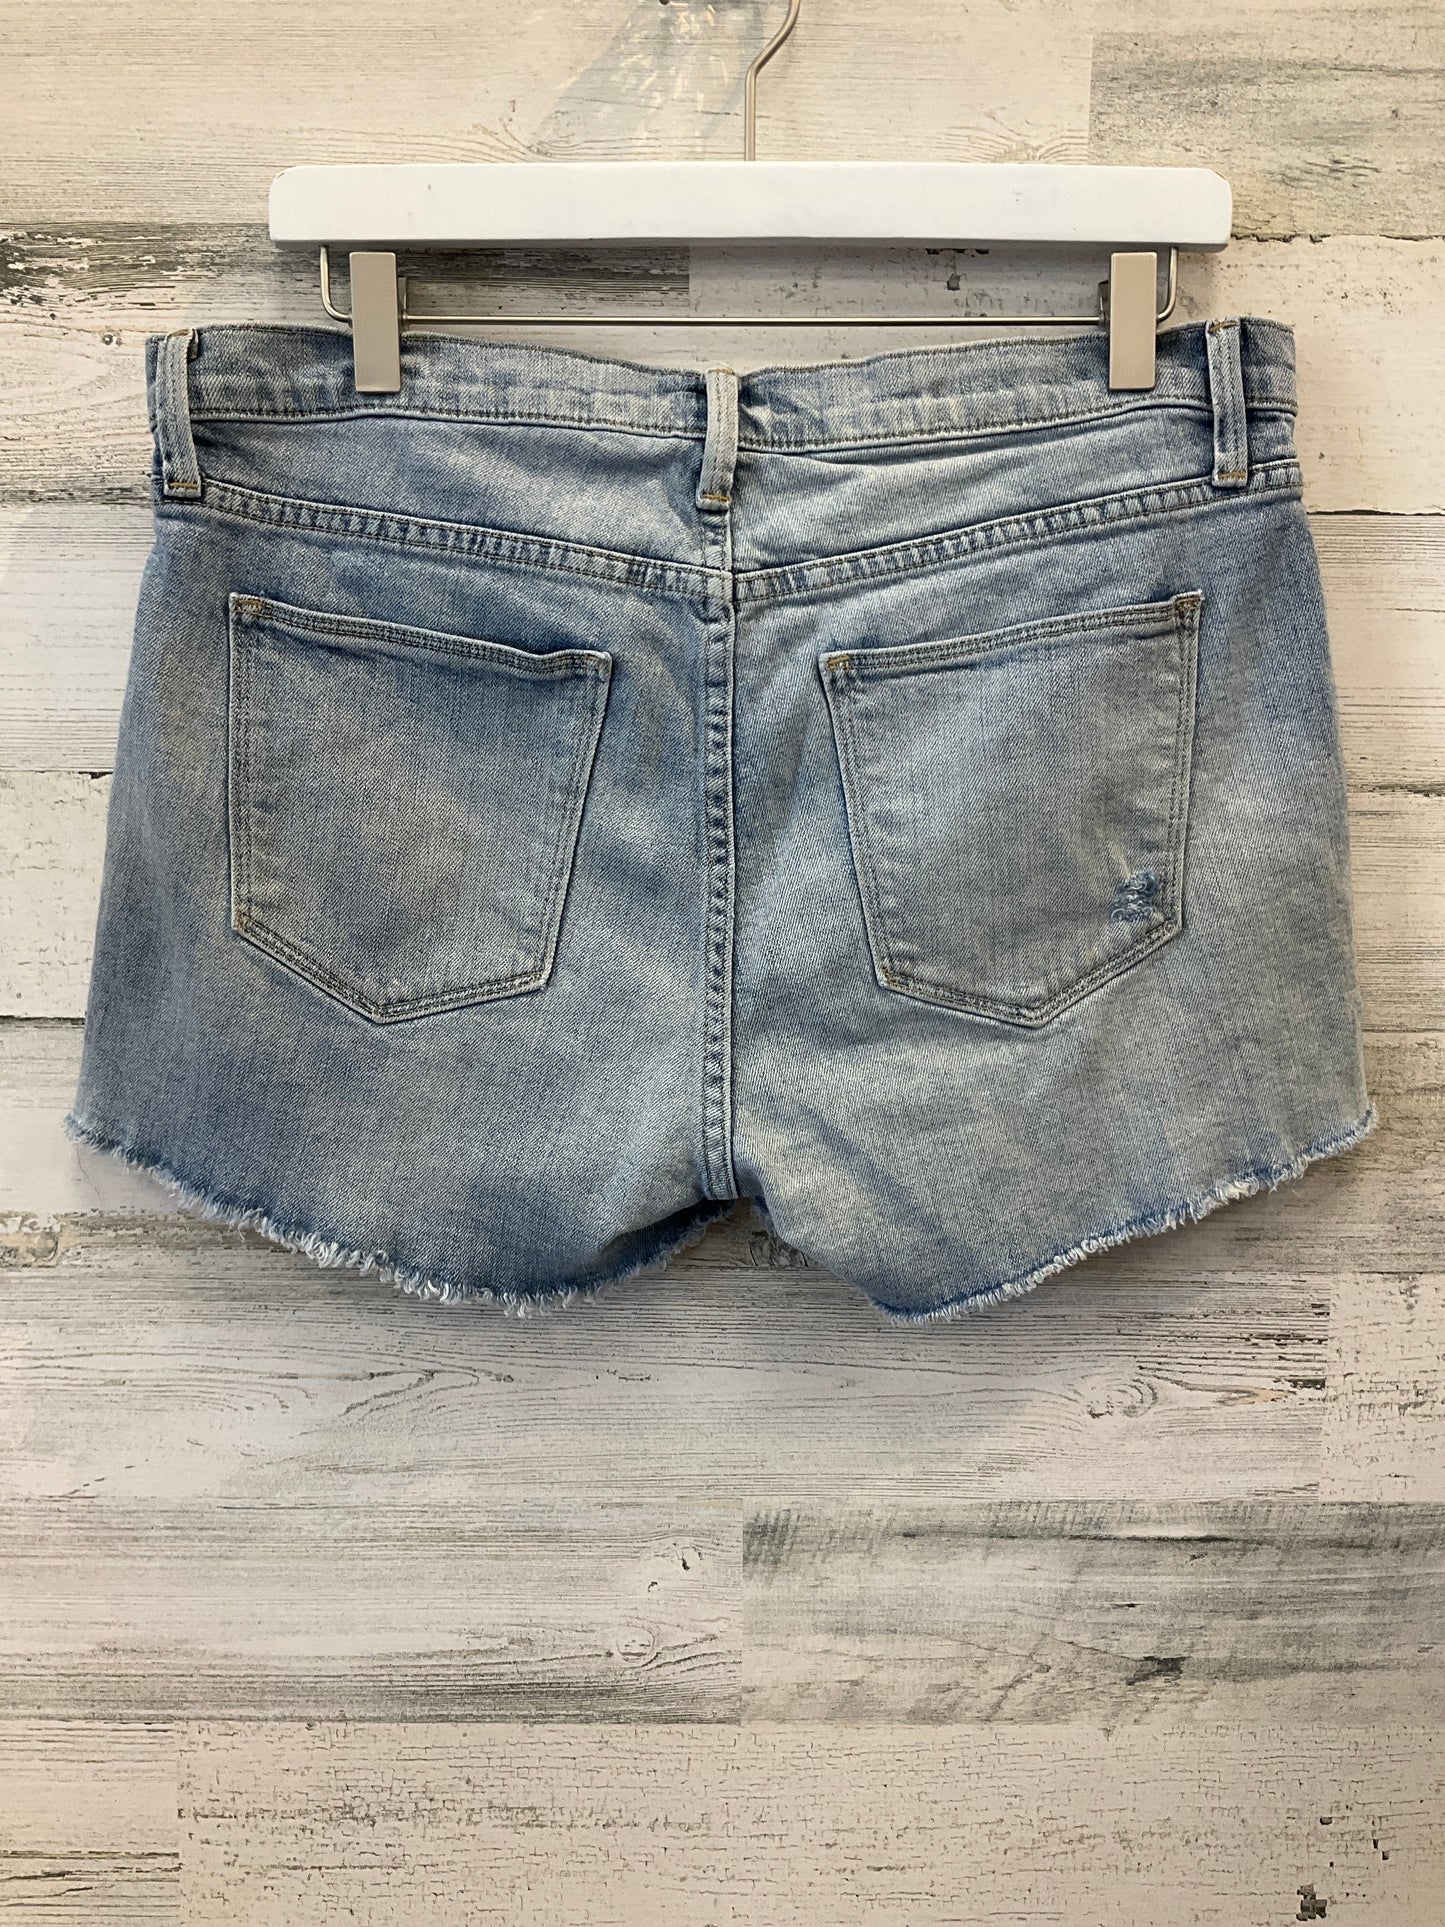 Blue Denim Shorts Gap, Size 14